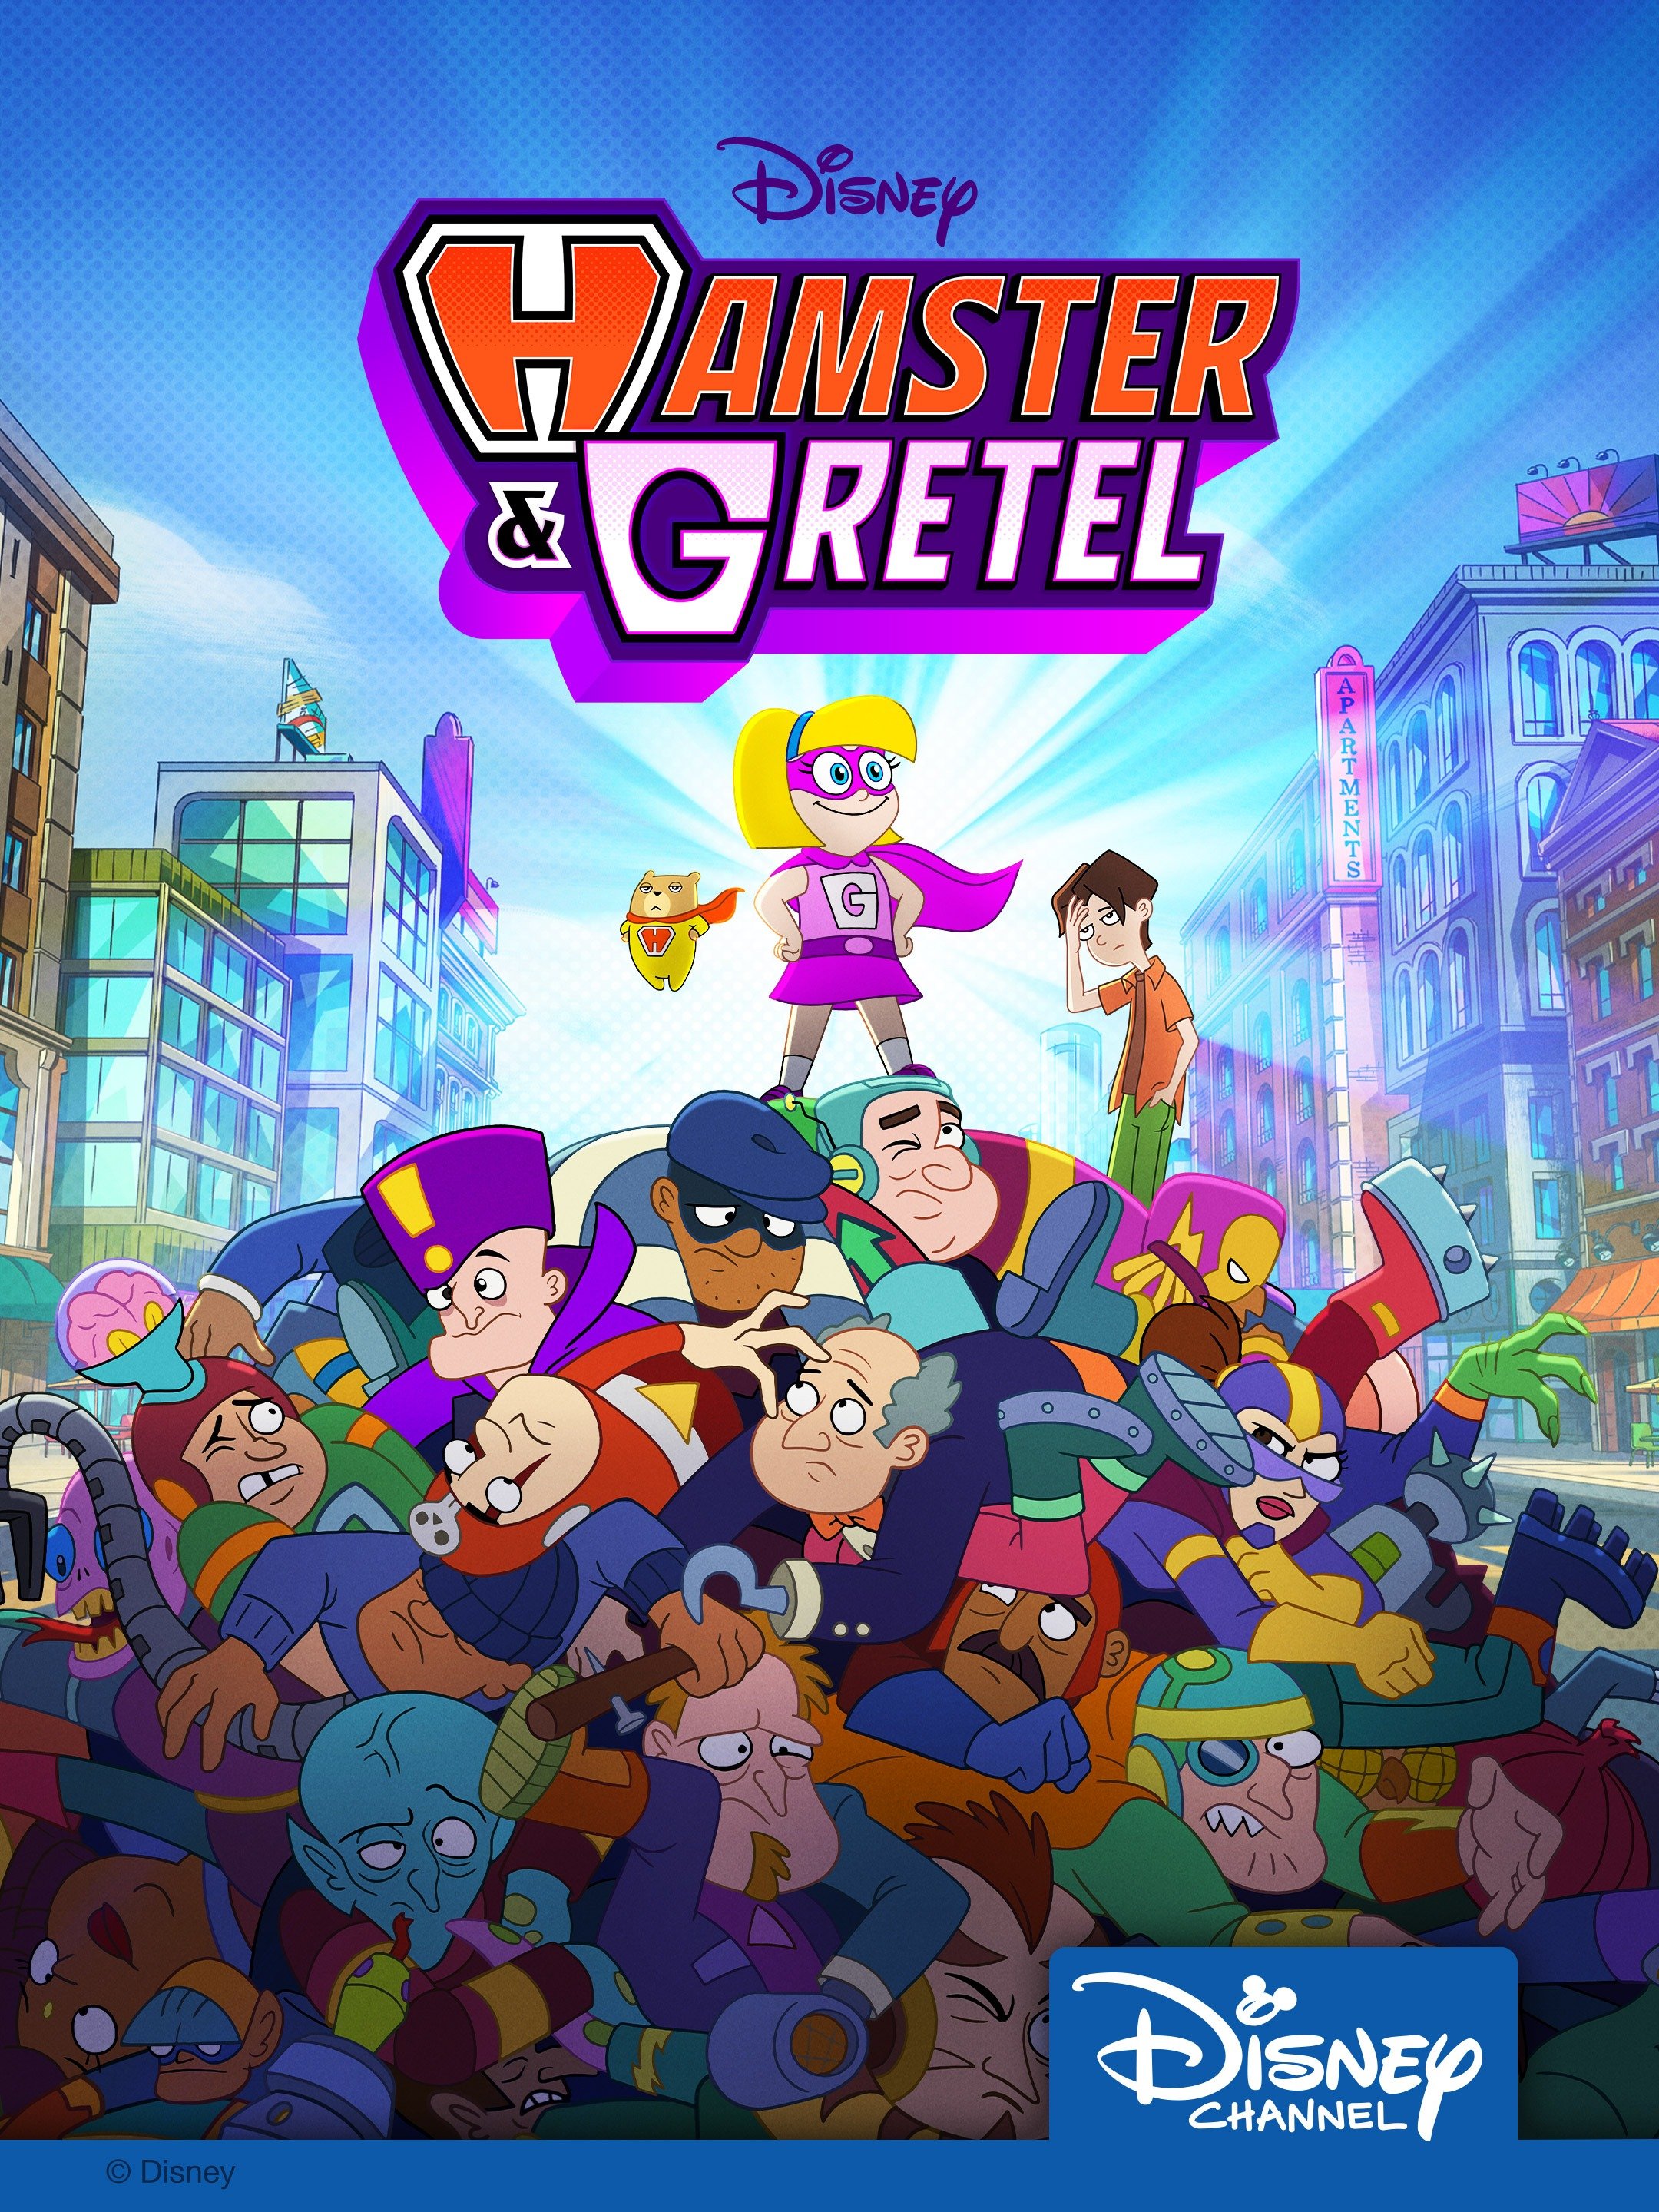 Hamster & Gretel - Rotten Tomatoes